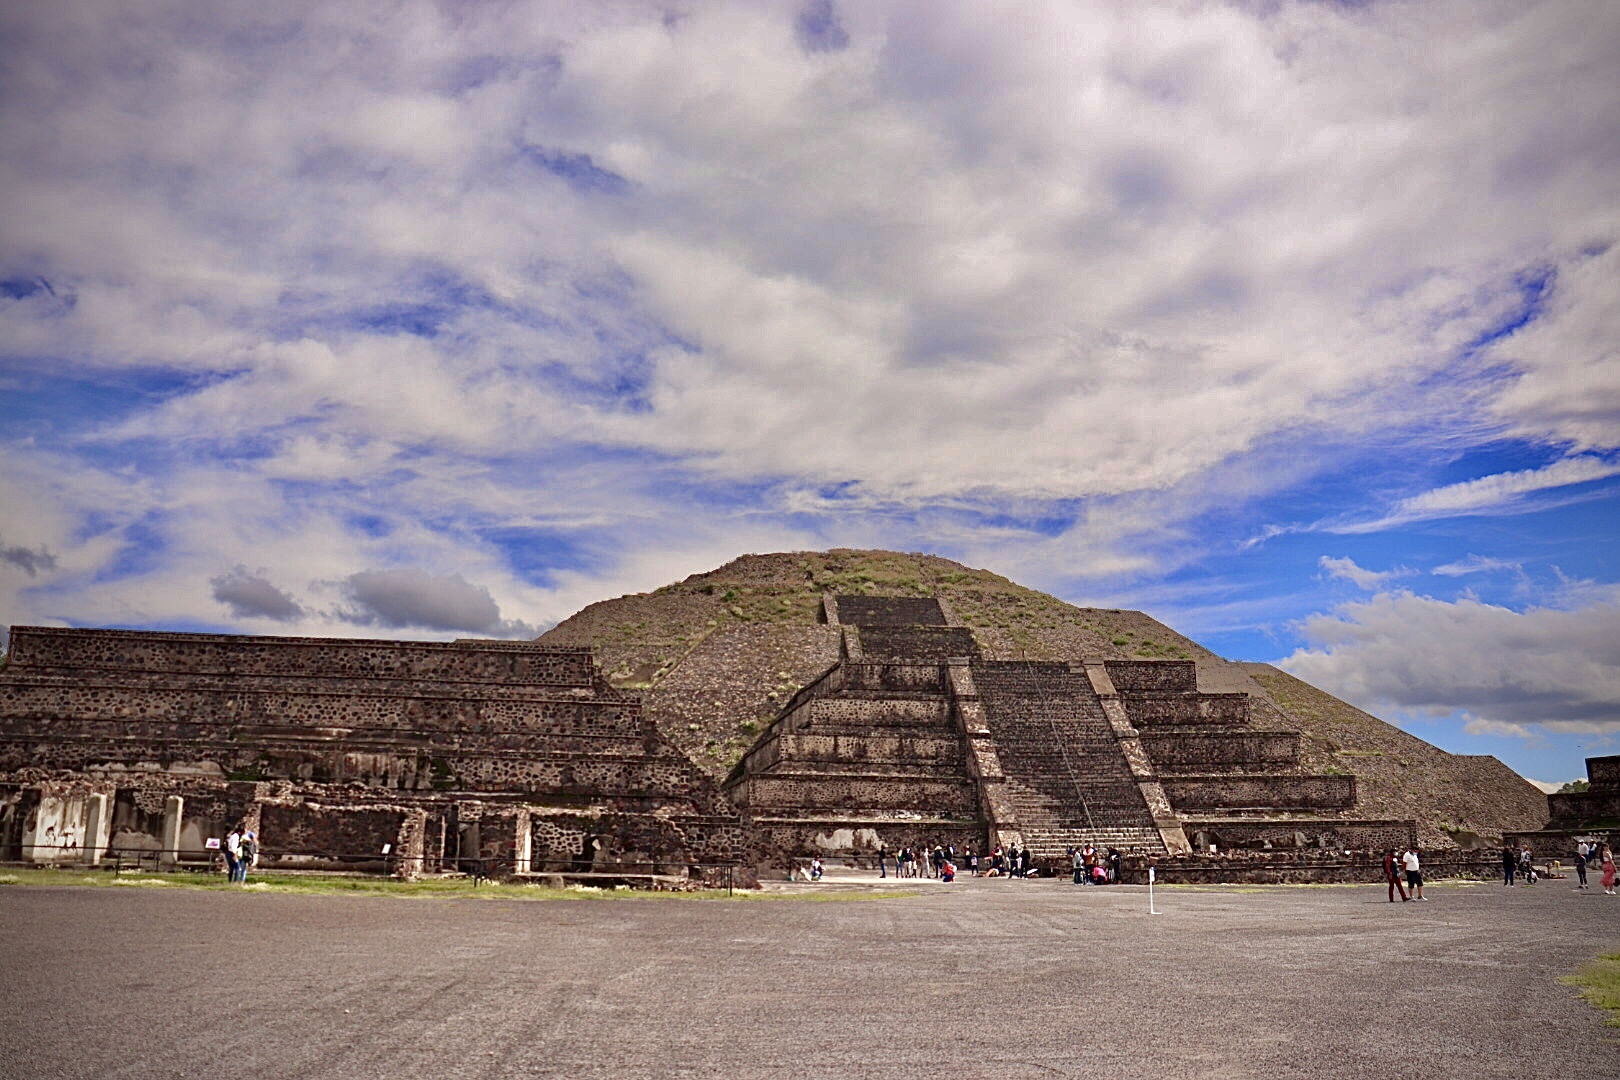 Galería: Teotihuacán bajo la lente de la potente cámara del Huawei P9